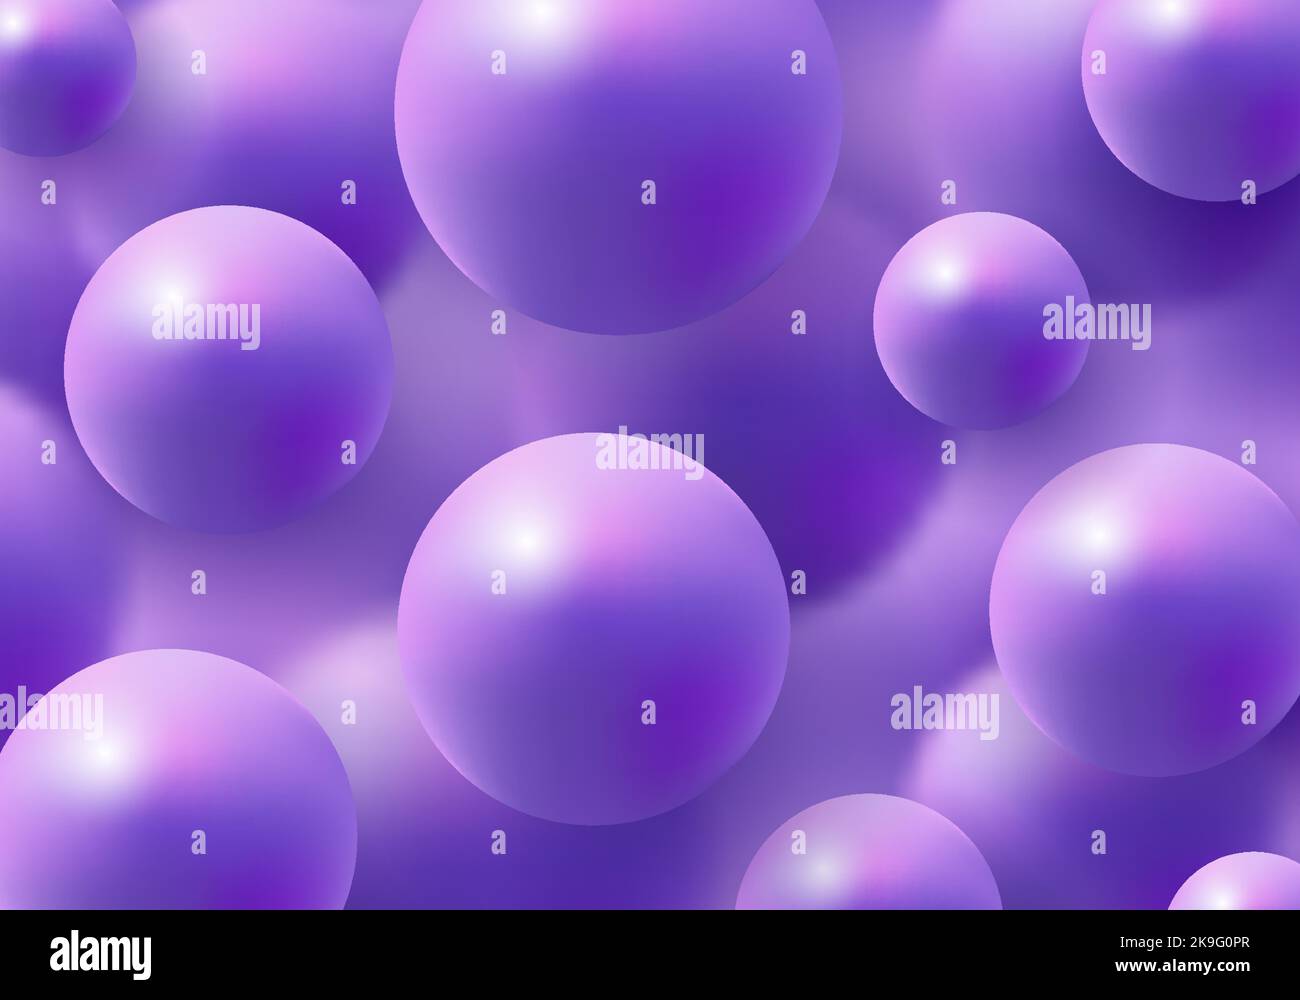 3D boules violettes réalistes sur des éléments effet flou arrière-plan style luxueux. Vous pouvez utiliser pour les produits cosmétiques, les brochures, les bannières, les affiches, les écriteaux, voler Illustration de Vecteur